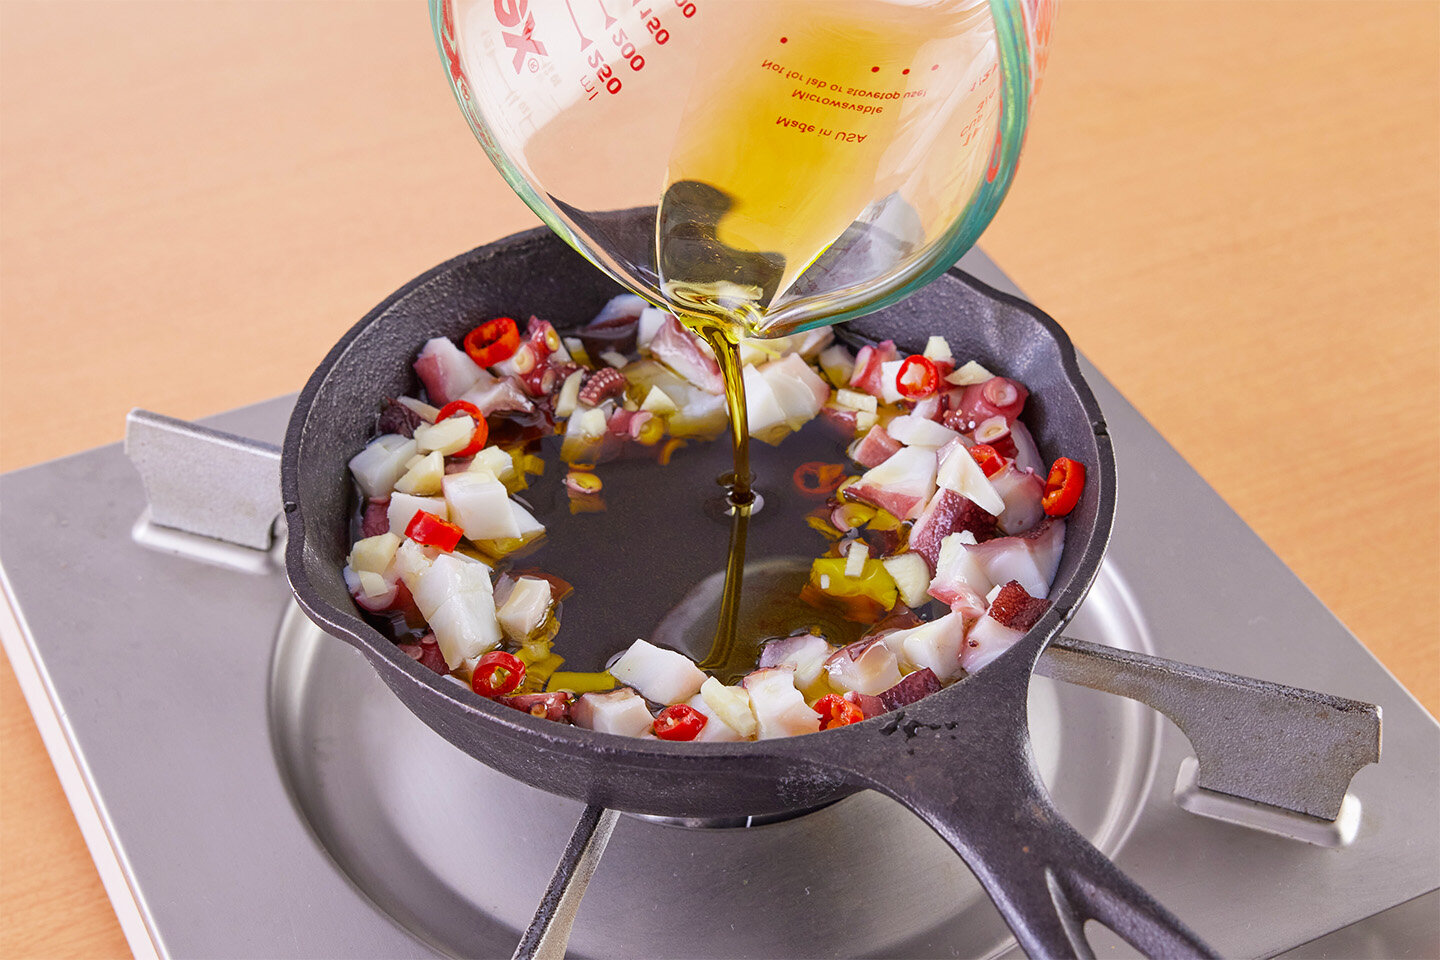 スキレットにゆでだこ、にんにく、赤唐辛子を入れて混ぜる。<br>中央を空けて、オリーブ油を注ぎ入れる。中火にかけ、2分ほど煮る。